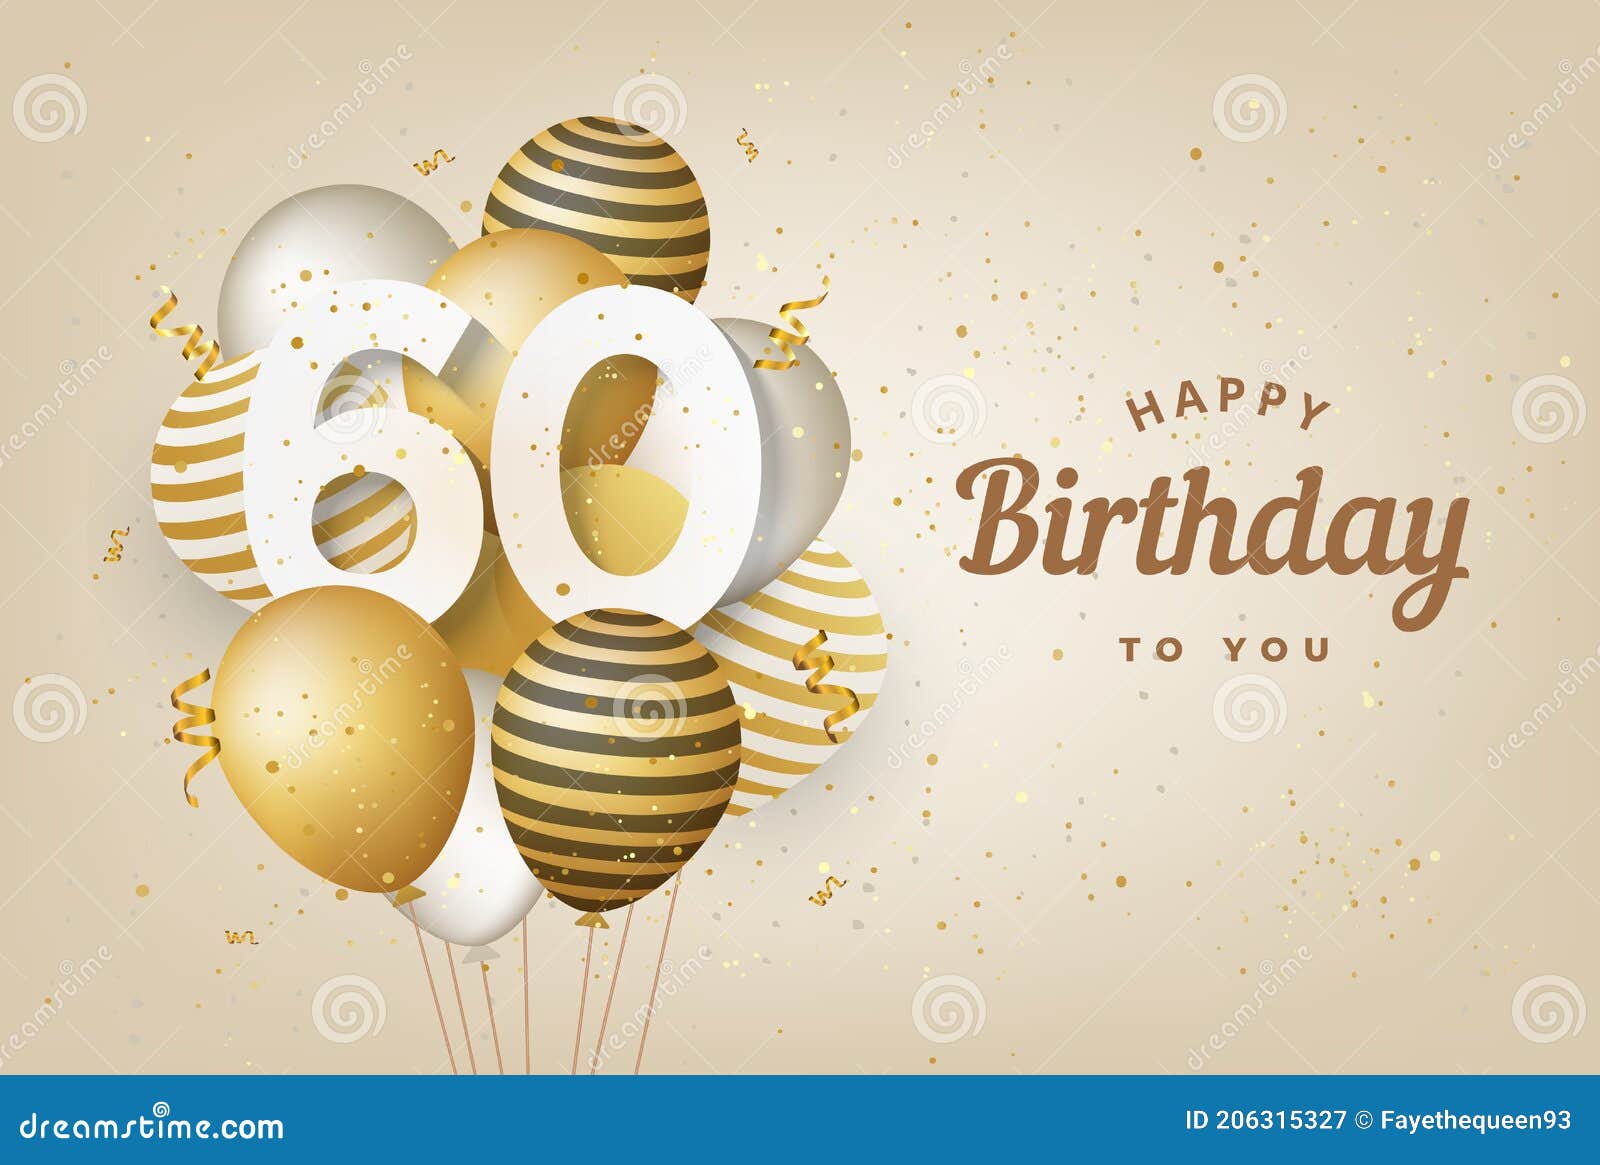 Trong những mẫu hình nền thiệp chúc mừng sinh nhật 60 tuổi với bóng bay vàng, bạn sẽ tìm thấy những thiết kế sáng tạo và độc đáo nhất. Hãy cùng lựa chọn một mẫu thiệp sinh nhật yêu thích và đẹp nhất để gửi lời chúc mừng ngọt ngào đến người thân trong ngày đặc biệt này.